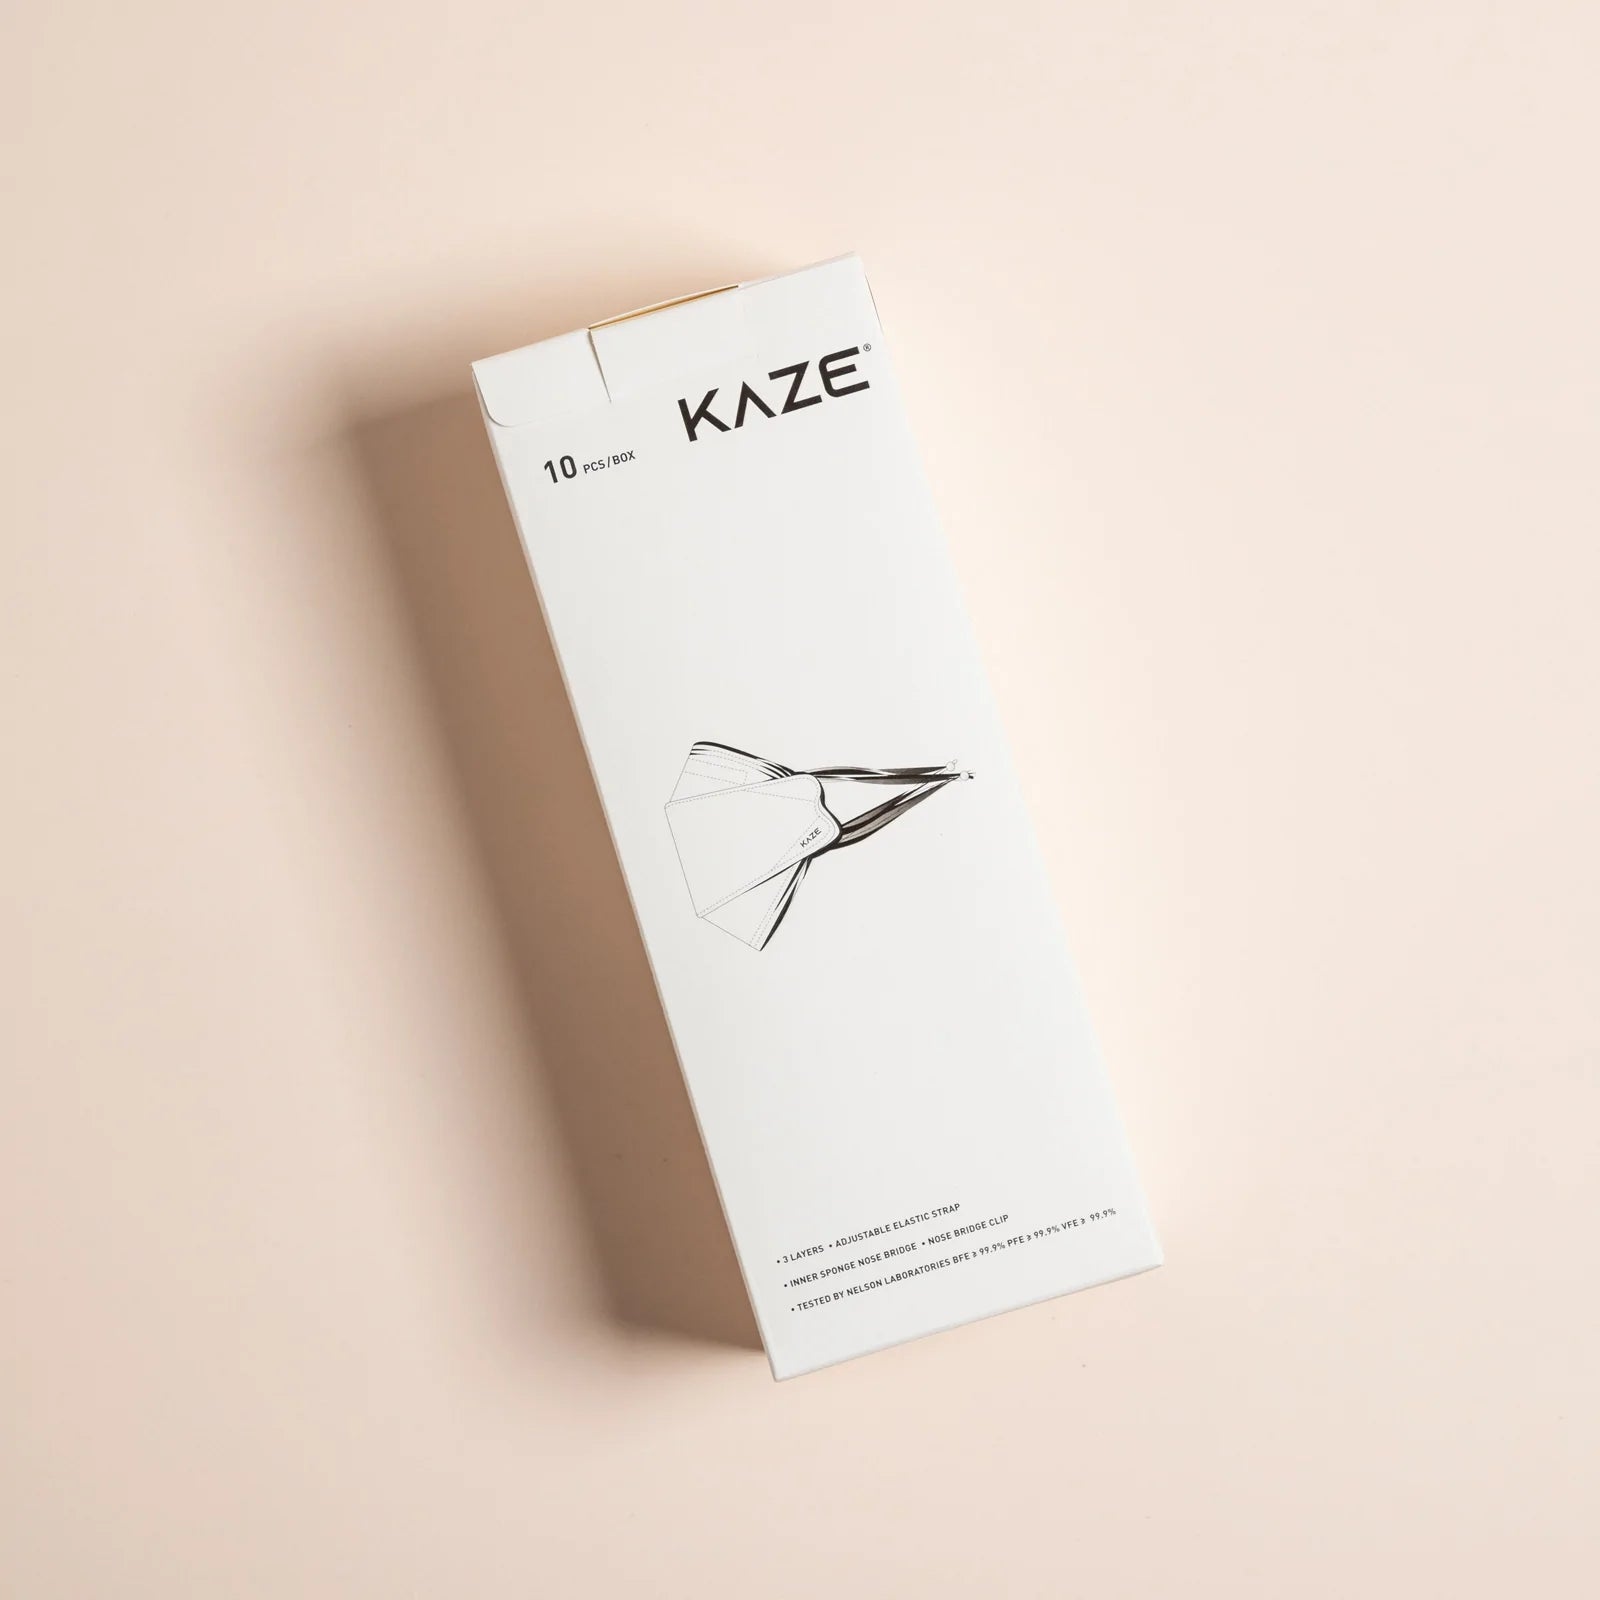 KAZE Masks-Light Succulent Series